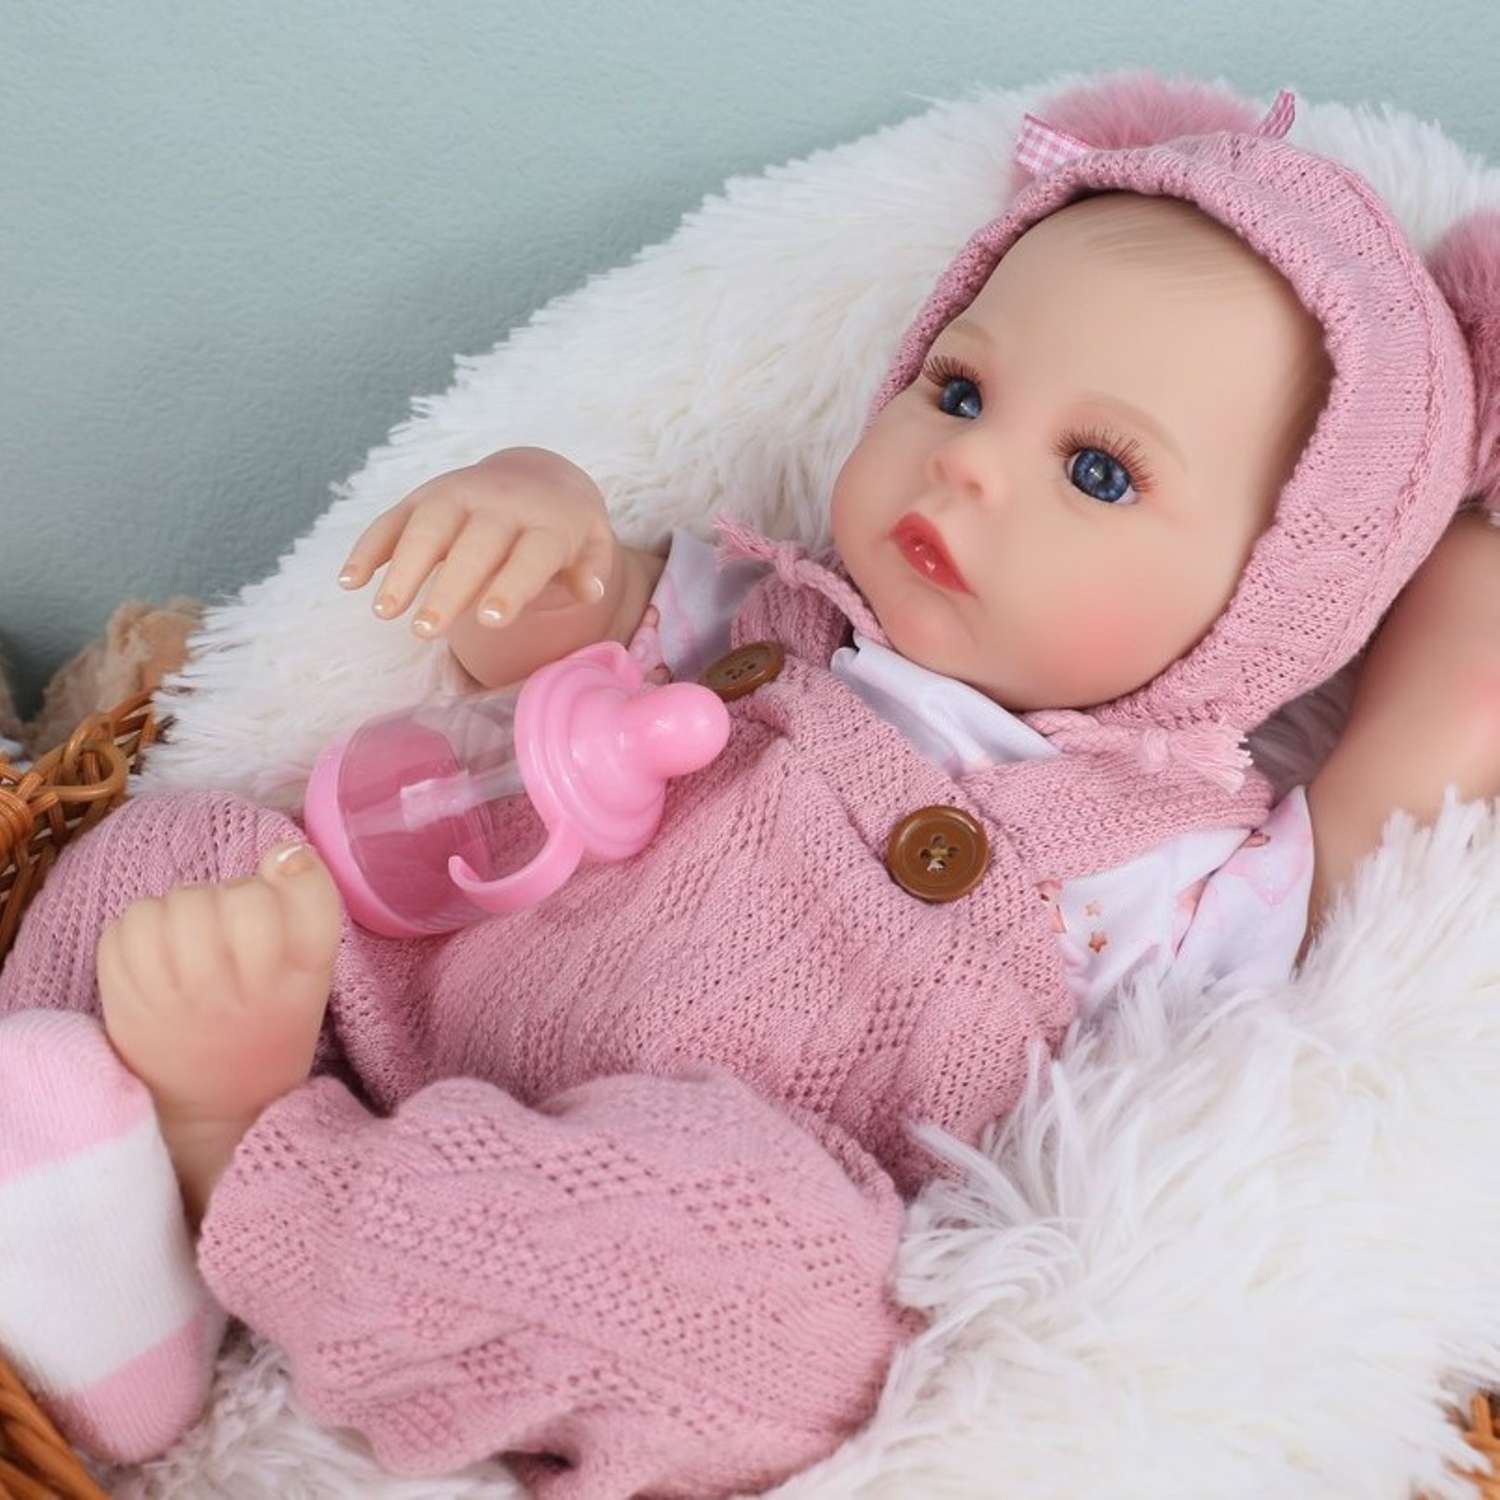 Кукла Реборн QA BABY Анна пупс с соской набор игрушки для девочки 45 см 42003 - фото 4